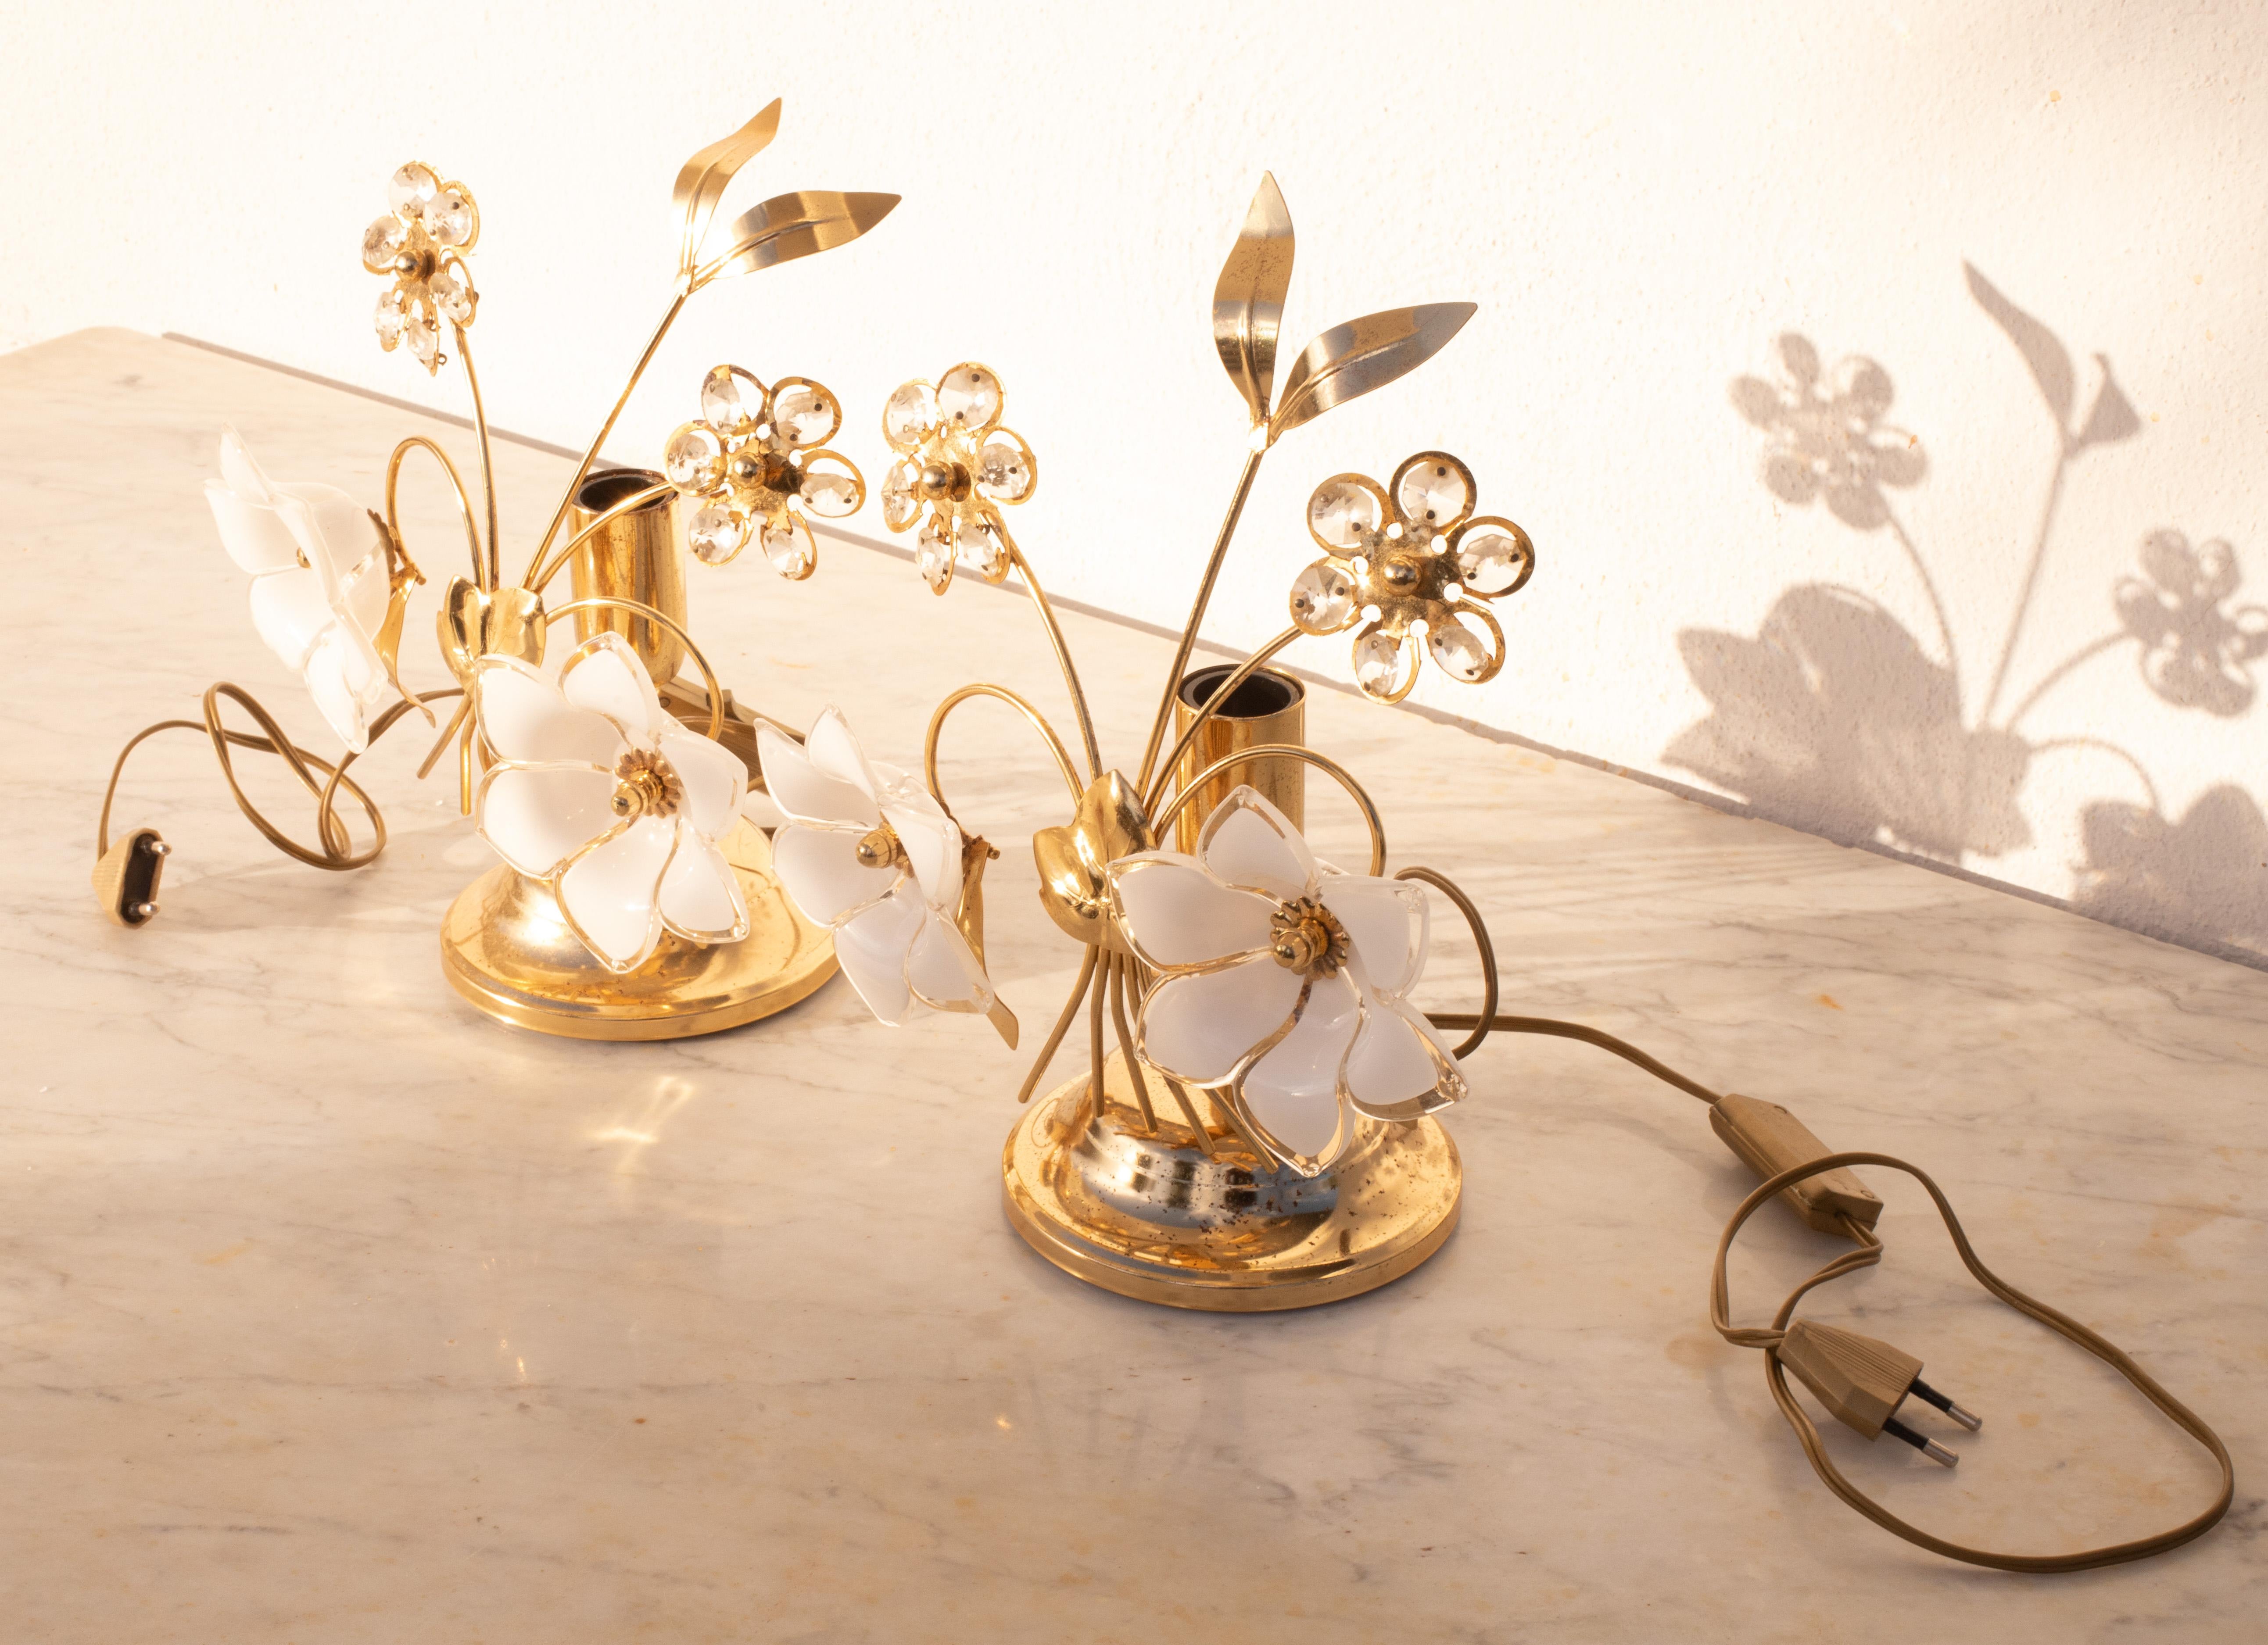 Joli set de 2 lampes de table avec des fleurs blanches en verre de Murano.
Convient pour une ampoule à vis E14, normes européennes, possibilité de remplacement par des normes américaines.
Mesures :
22 cm de largeur
Hauteur 29 cm
Sur la structure